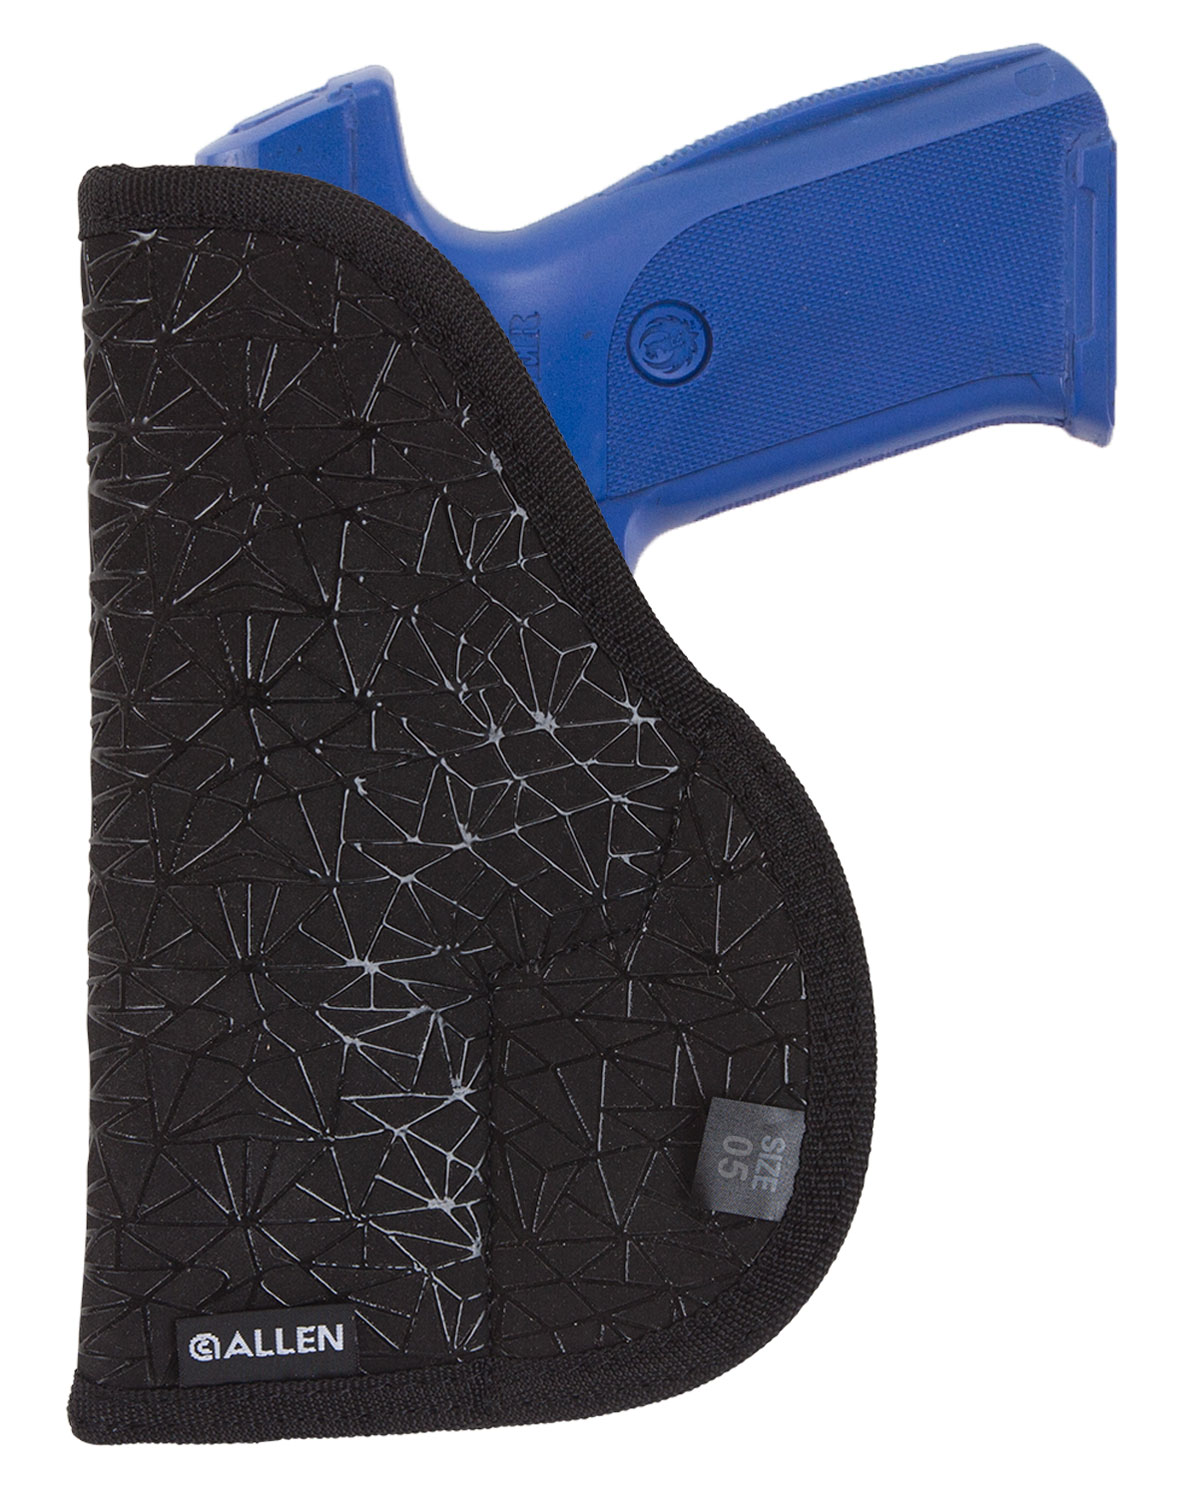 Allen 44905 Spiderweb  Handgun Case Black Nylon Pocket Fits Ruger SR9C/Glock 26, 27 Ambidextrous